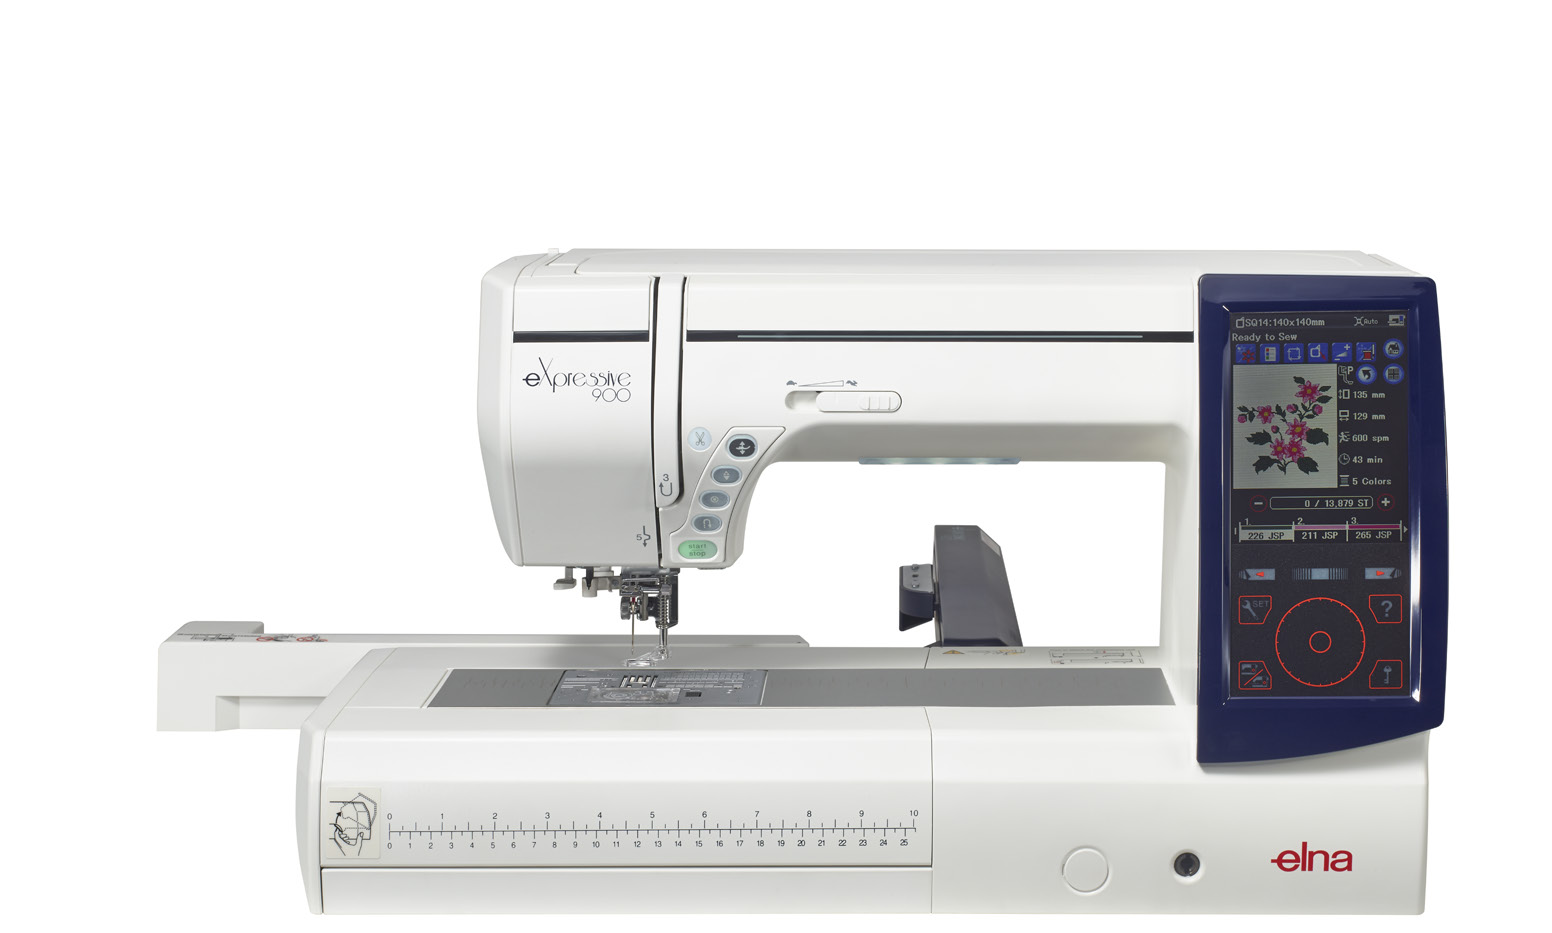 GARANTÍA Y SERVICIO: La gran reputación de Elna fue establecida en 1940 con la producción de su primera máquina de coser.